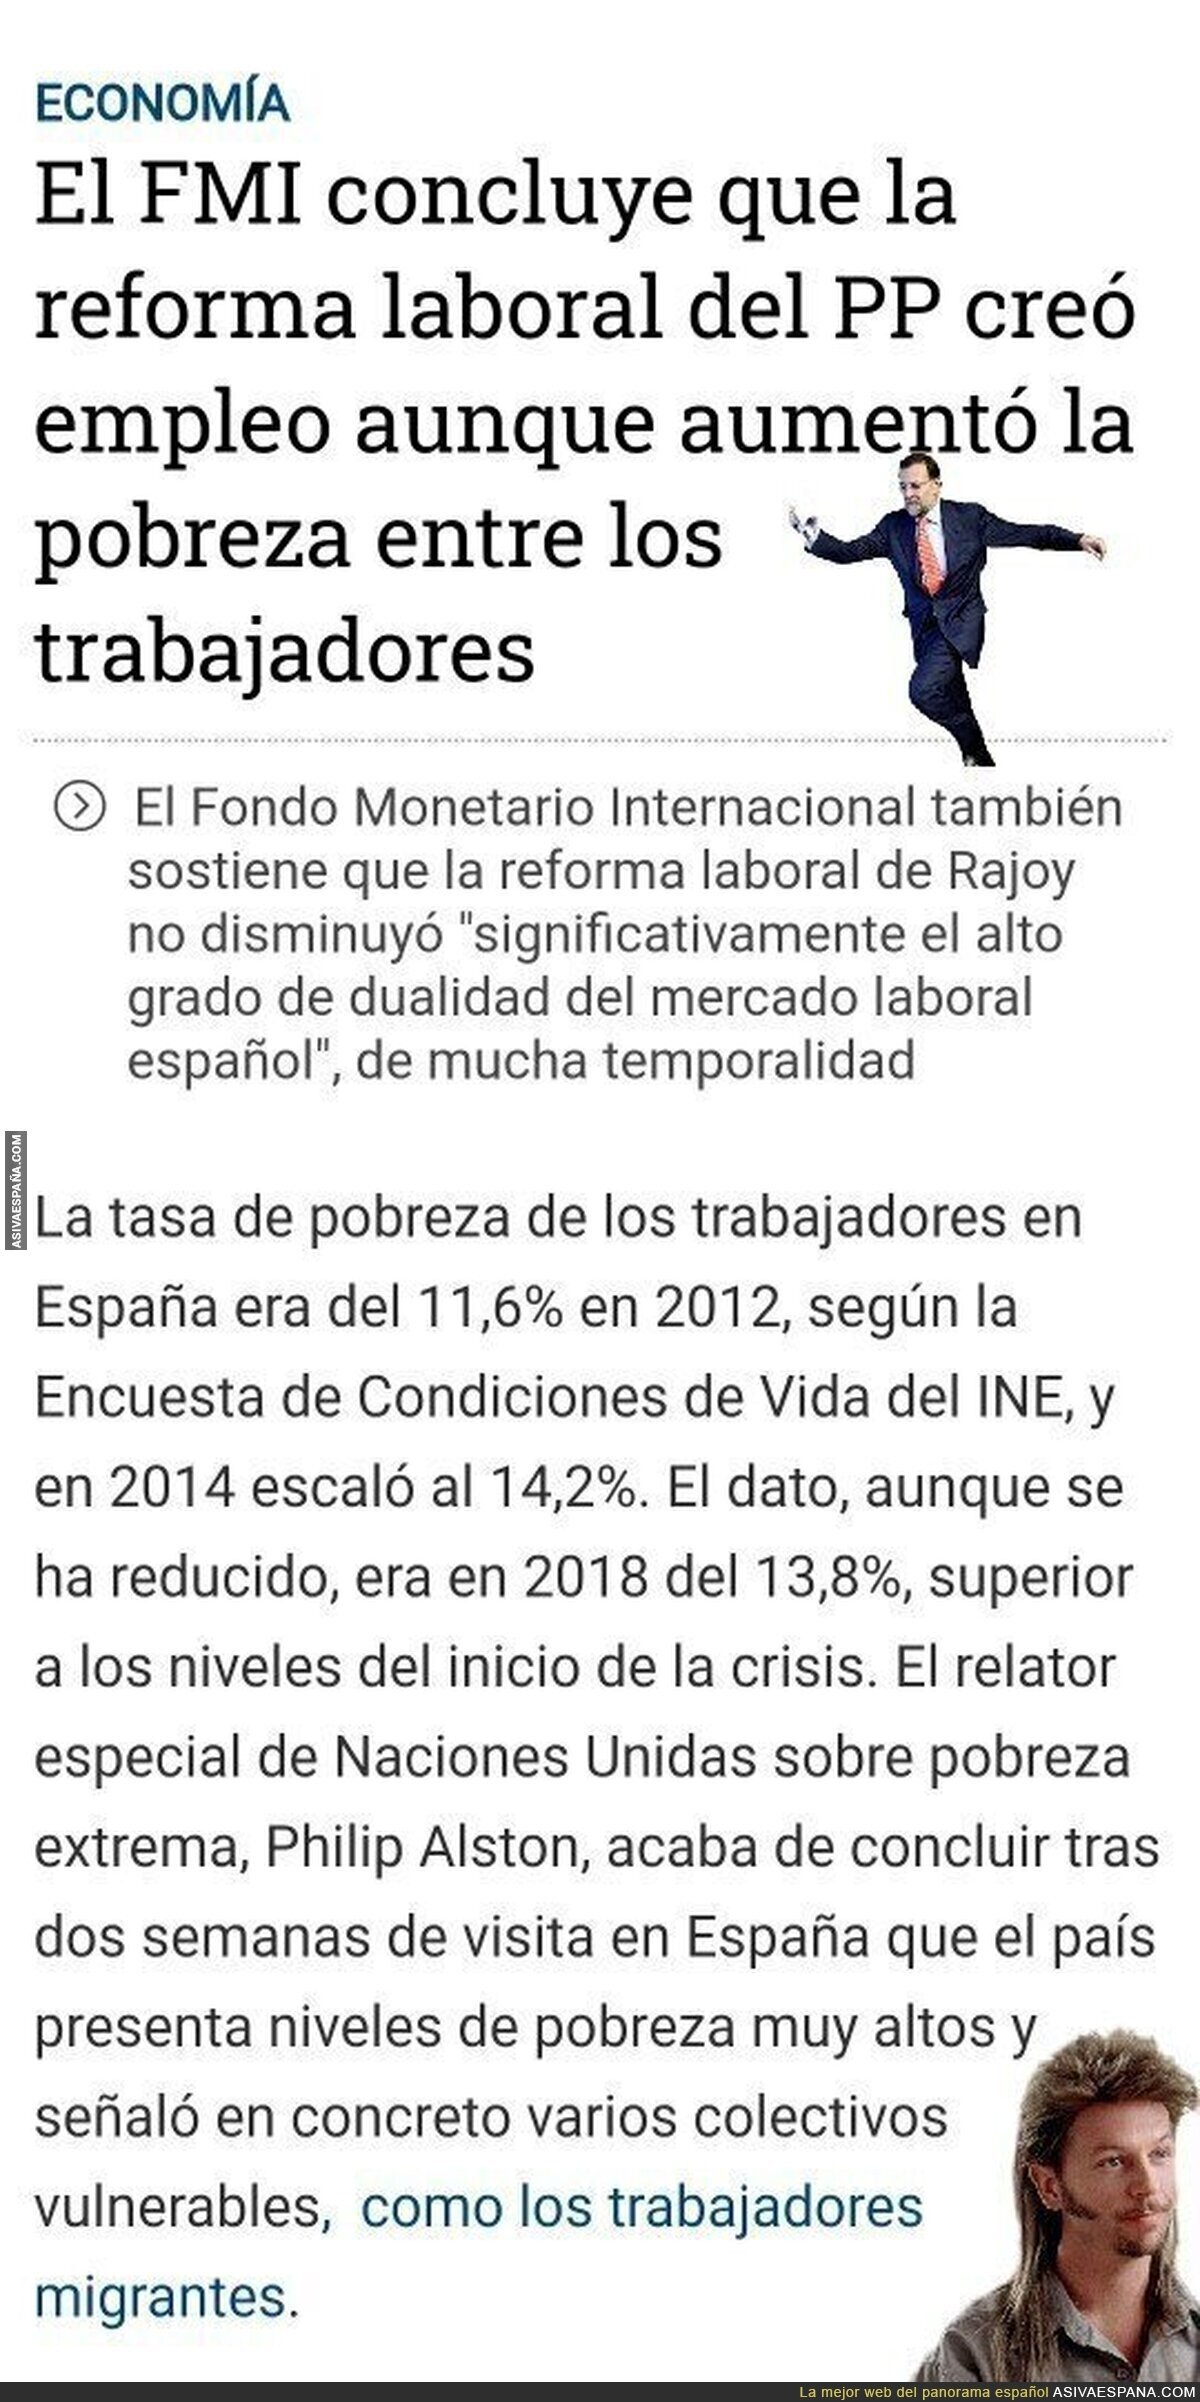 El FMI es ETA, y un poco de Venezuela. Con un pizca de Irán (de los malos no de los de Santi)